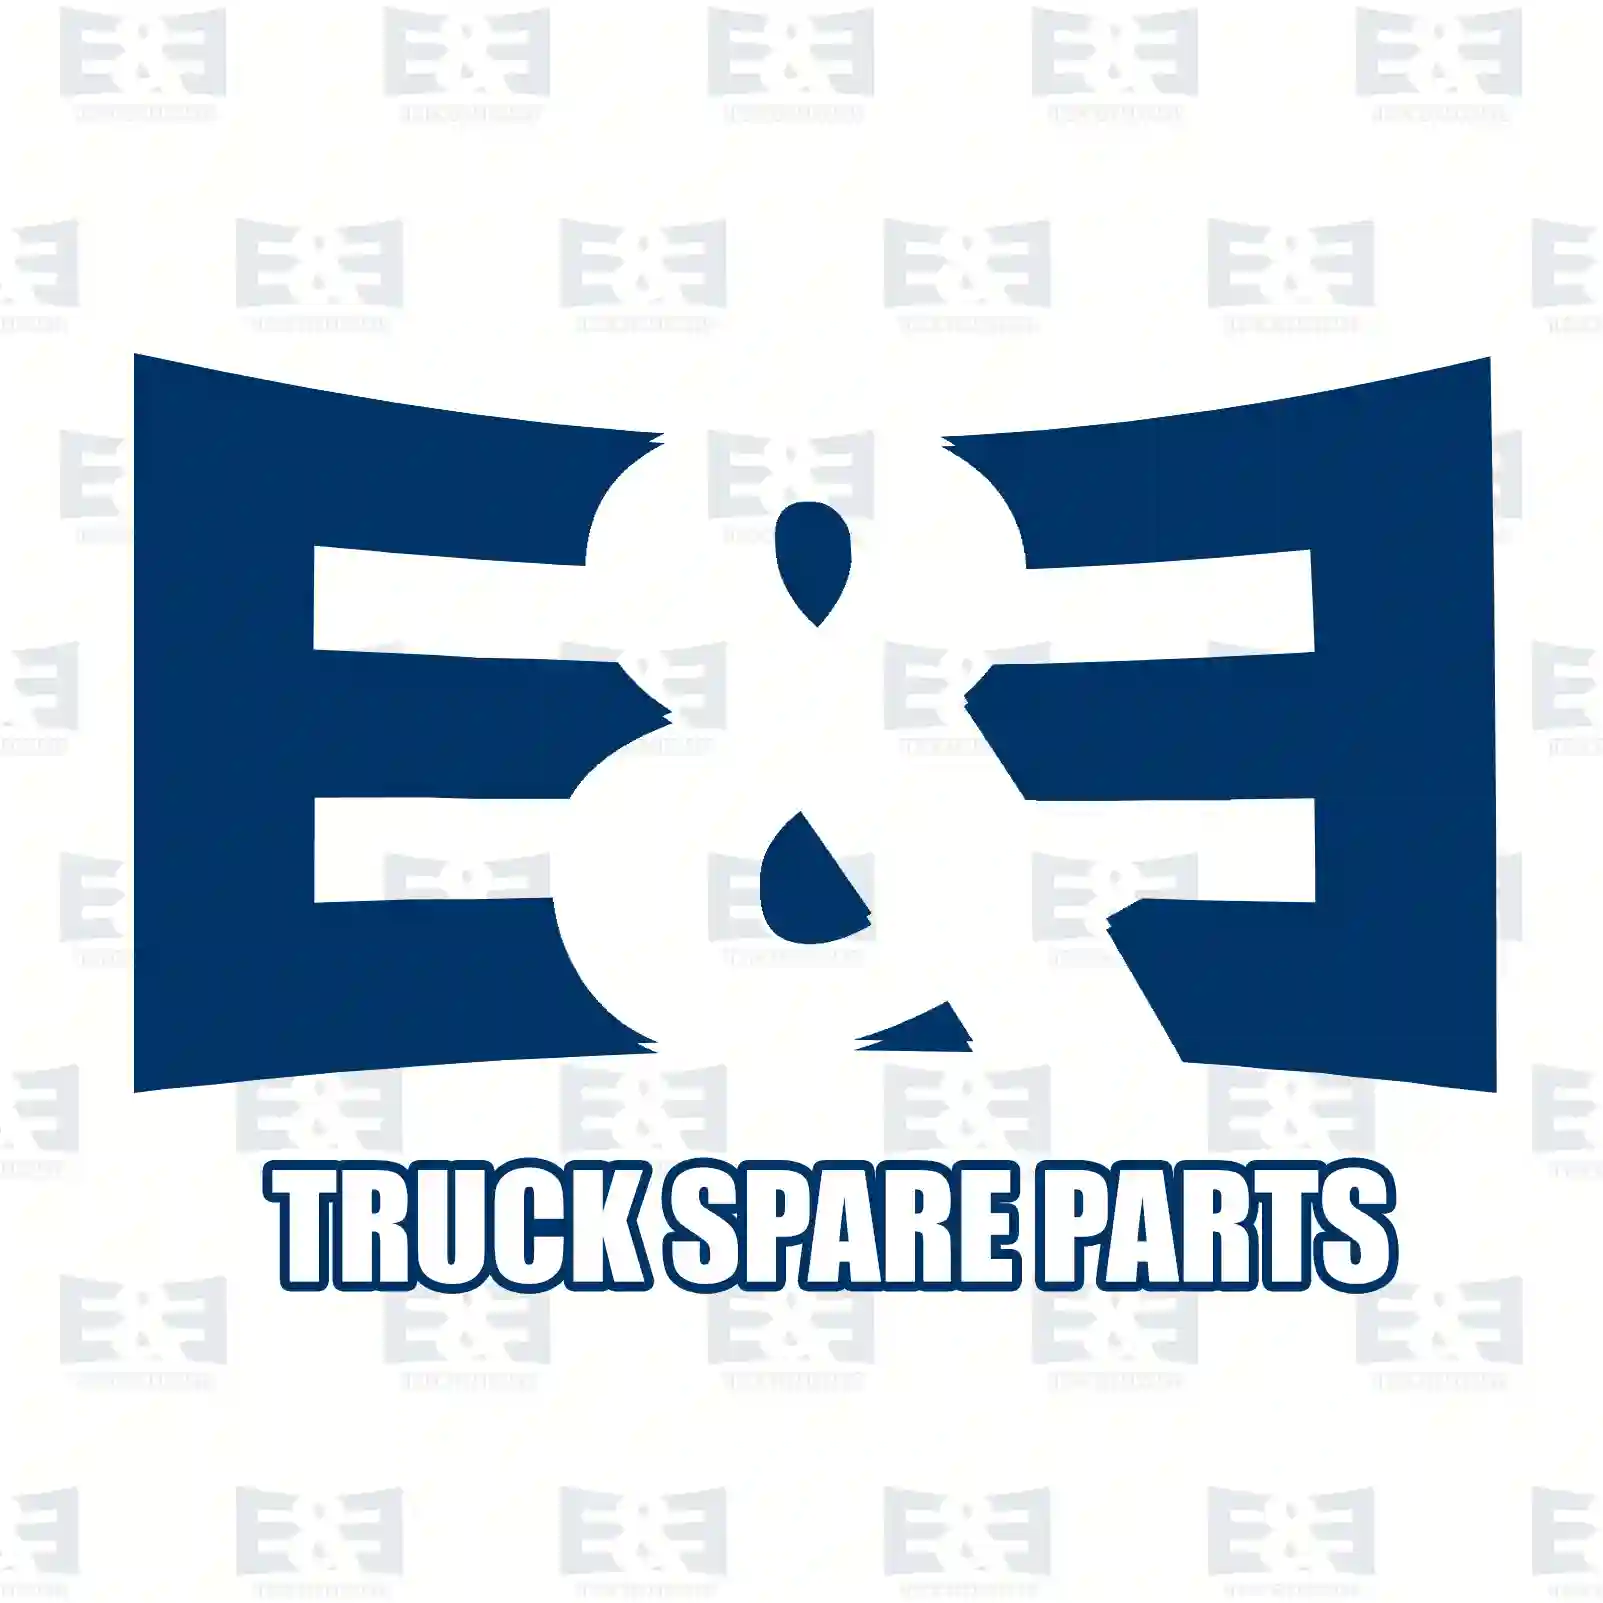 Shock absorber, 2E2270946, 81437016888, 81437016888, , , , ||  2E2270946 E&E Truck Spare Parts | Truck Spare Parts, Auotomotive Spare Parts Shock absorber, 2E2270946, 81437016888, 81437016888, , , , ||  2E2270946 E&E Truck Spare Parts | Truck Spare Parts, Auotomotive Spare Parts